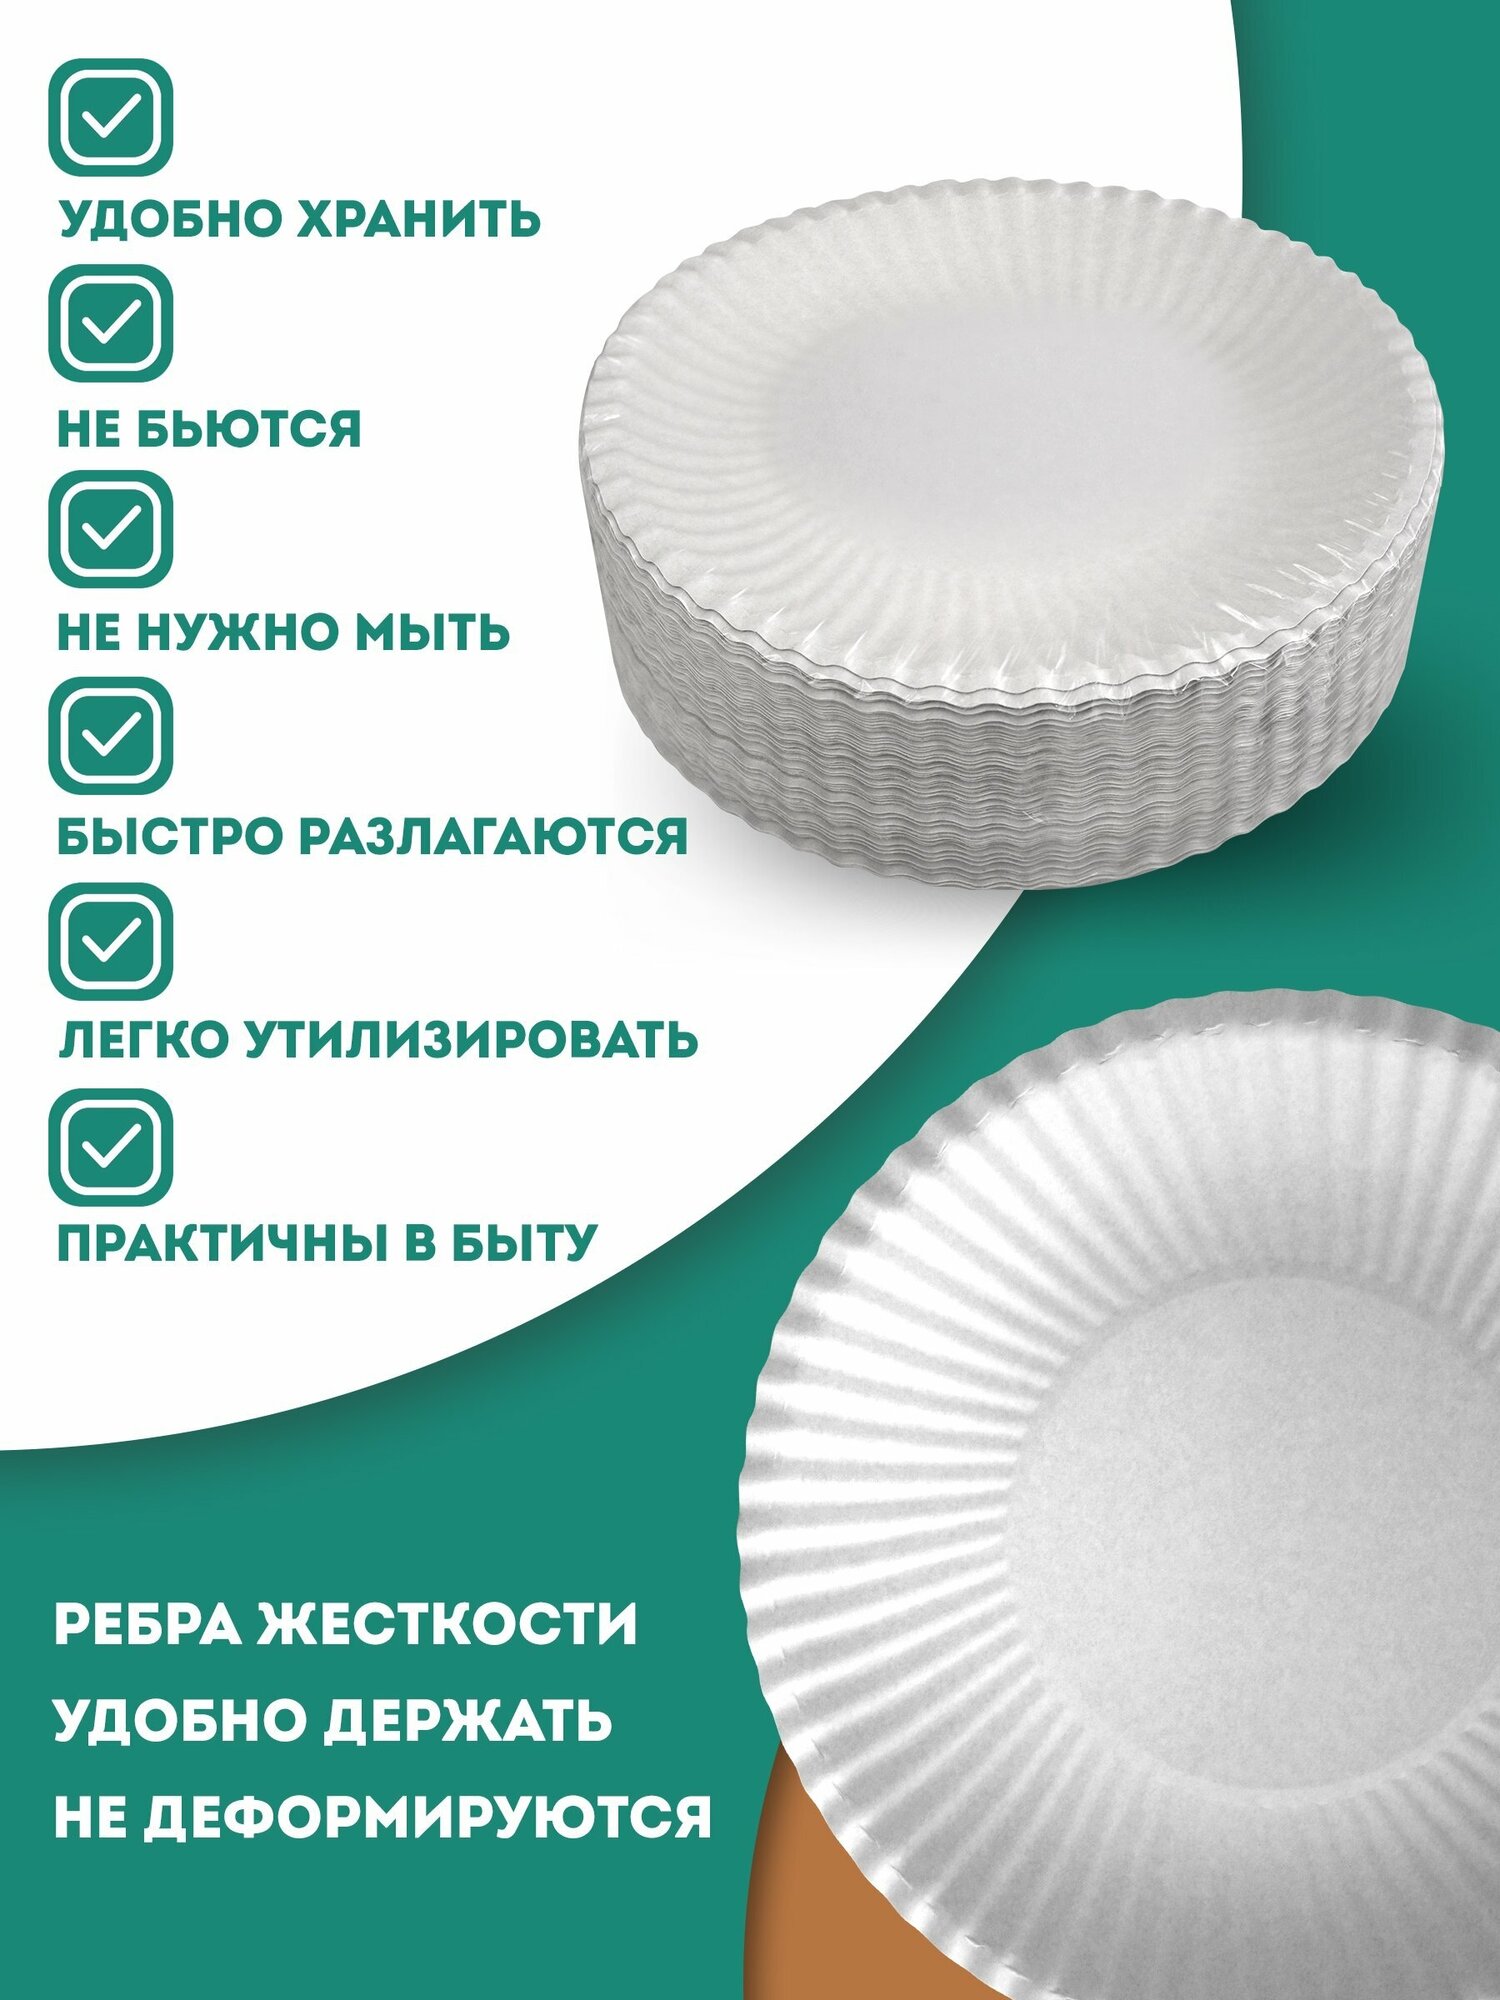 Одноразовые бумажные тарелки, белые, диаметр 170 мм, 100 шт.